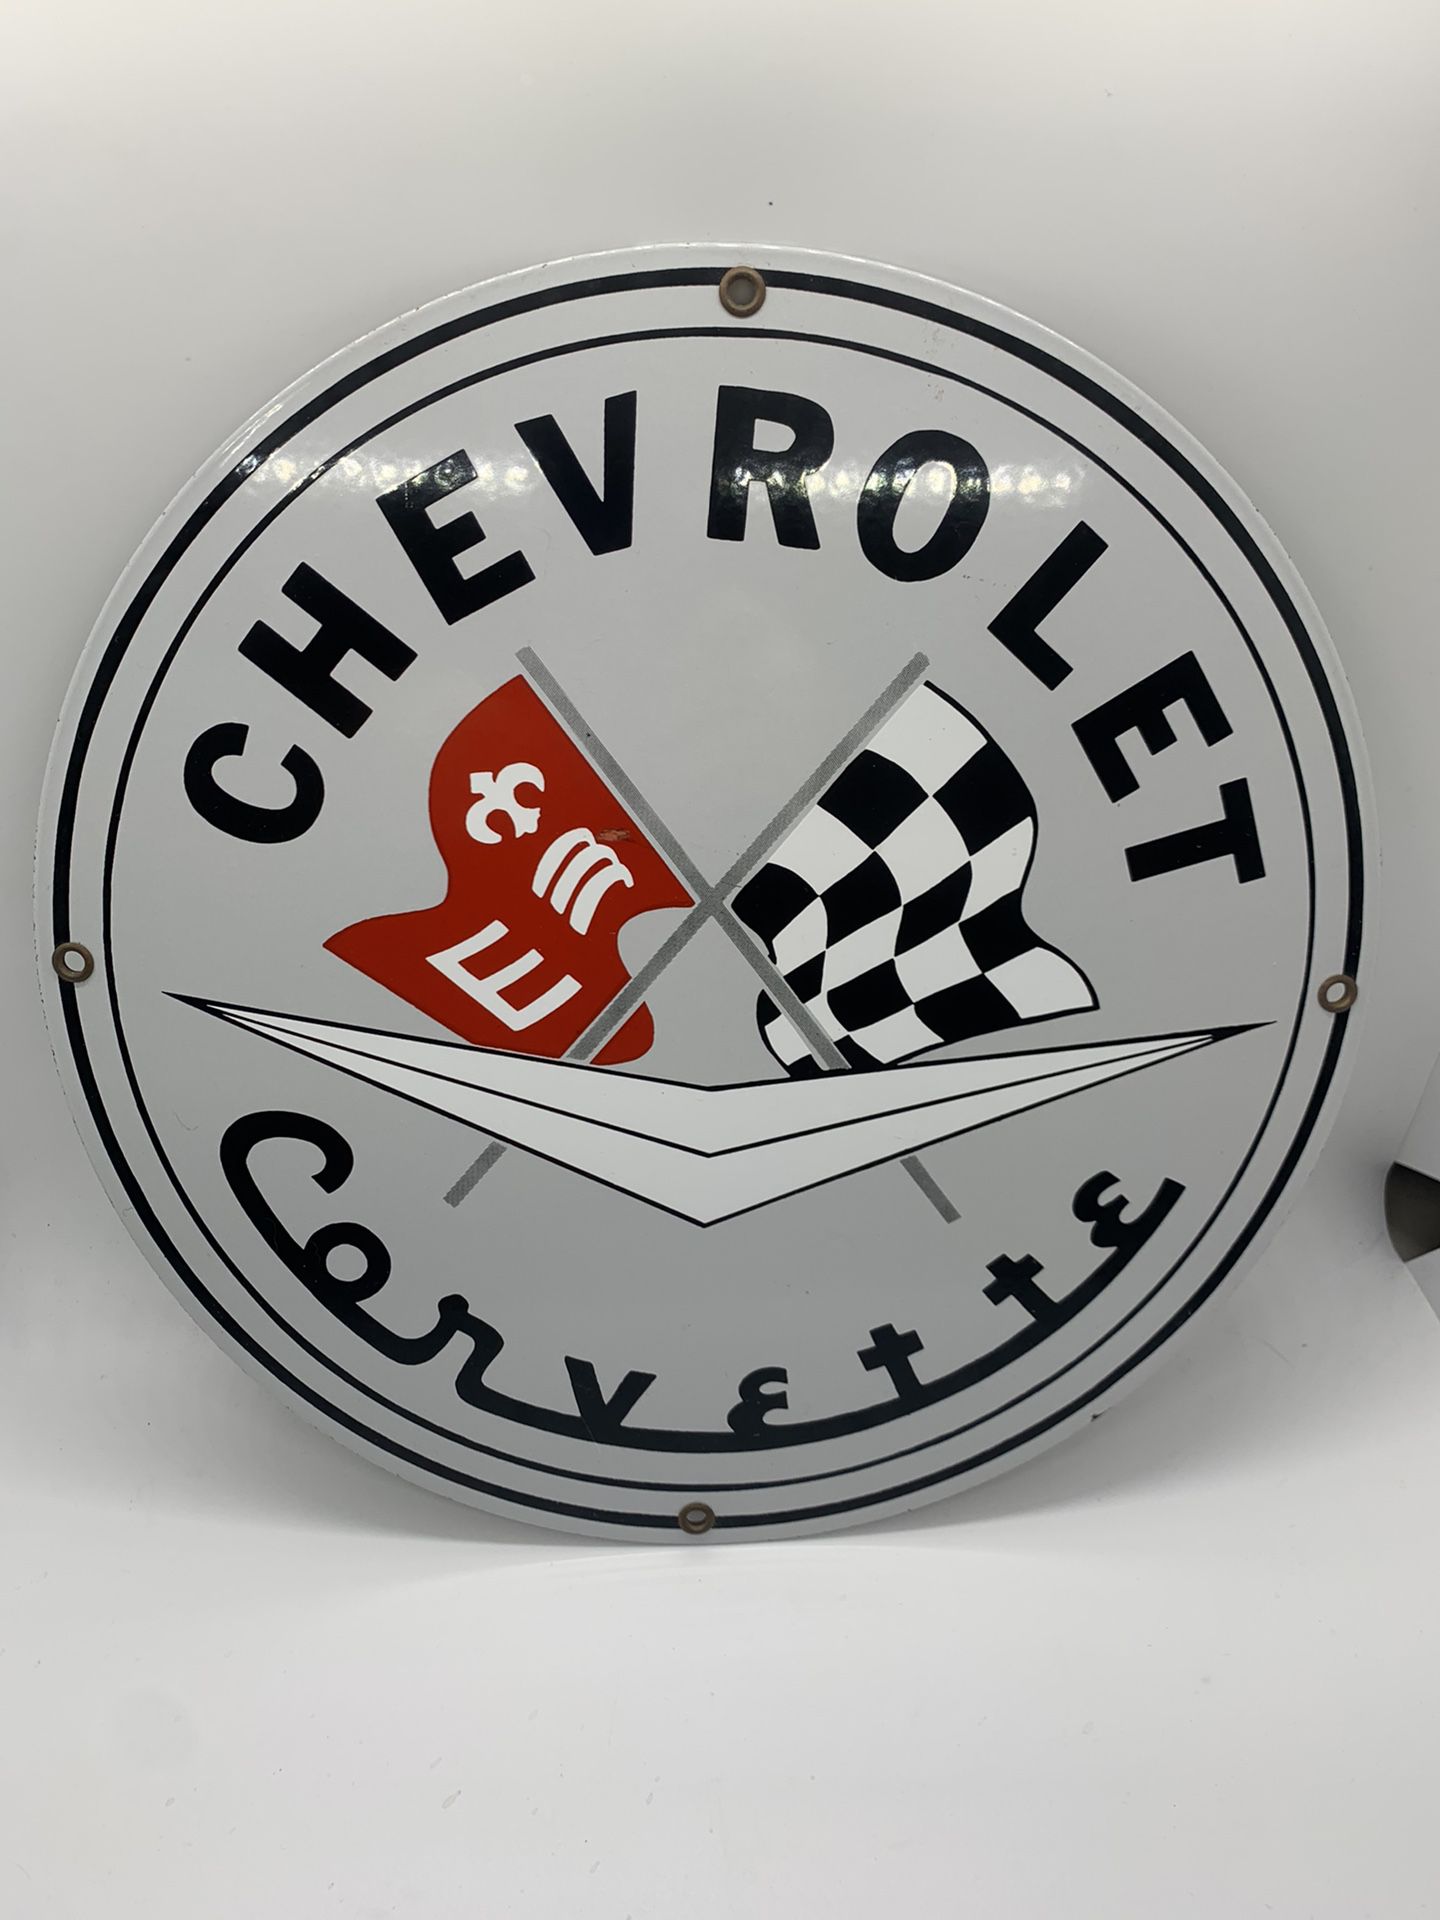 Vintage Chevrolet Corvette Metal Sign- Heavy Retro Chevy Memorabilia Car Collector Garage Signage